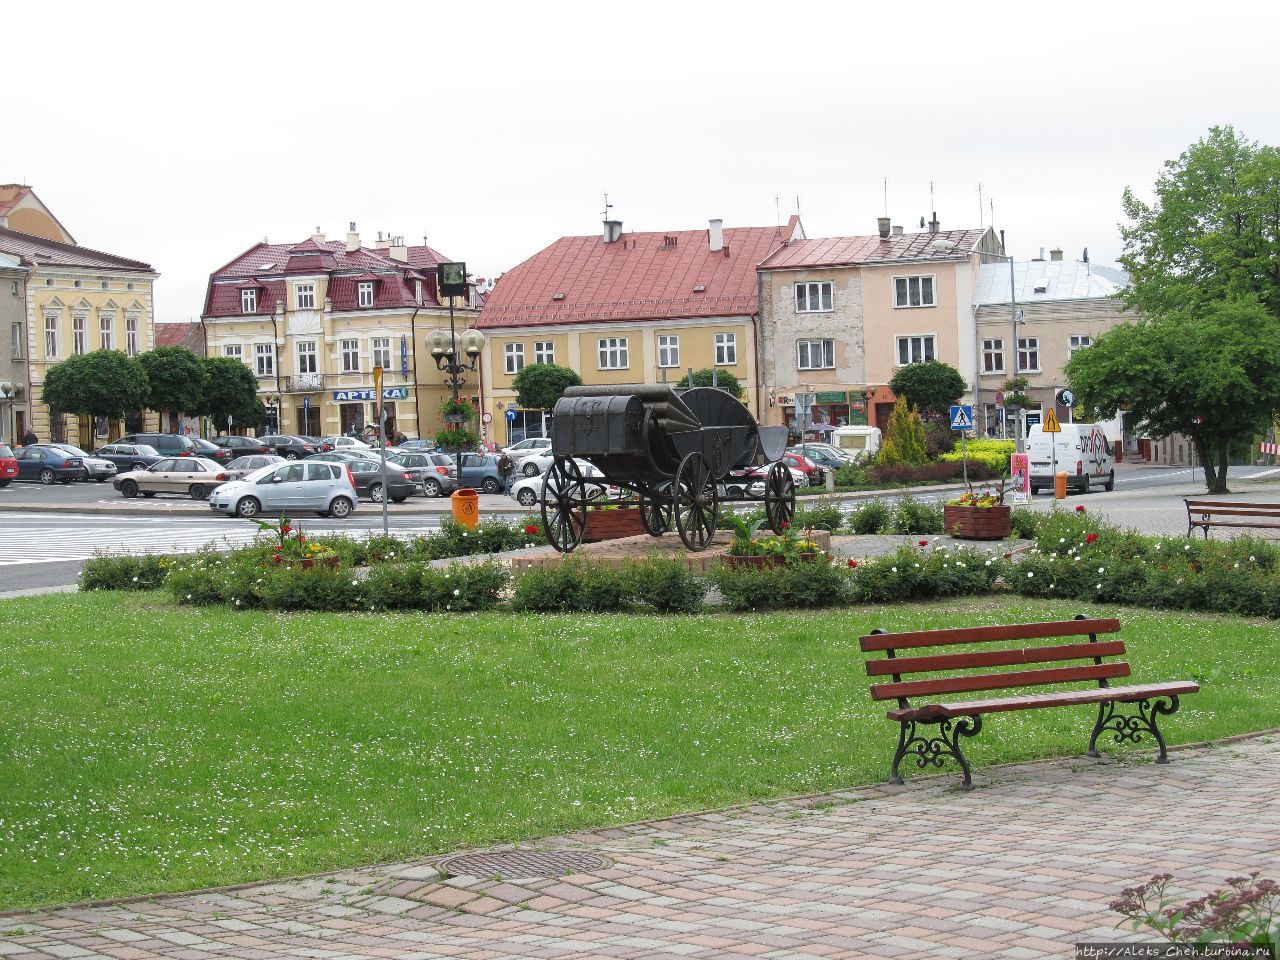 Памятник на Рынке. Карета символизирует музей карет, который находится в замке. Ланьцут, Польша